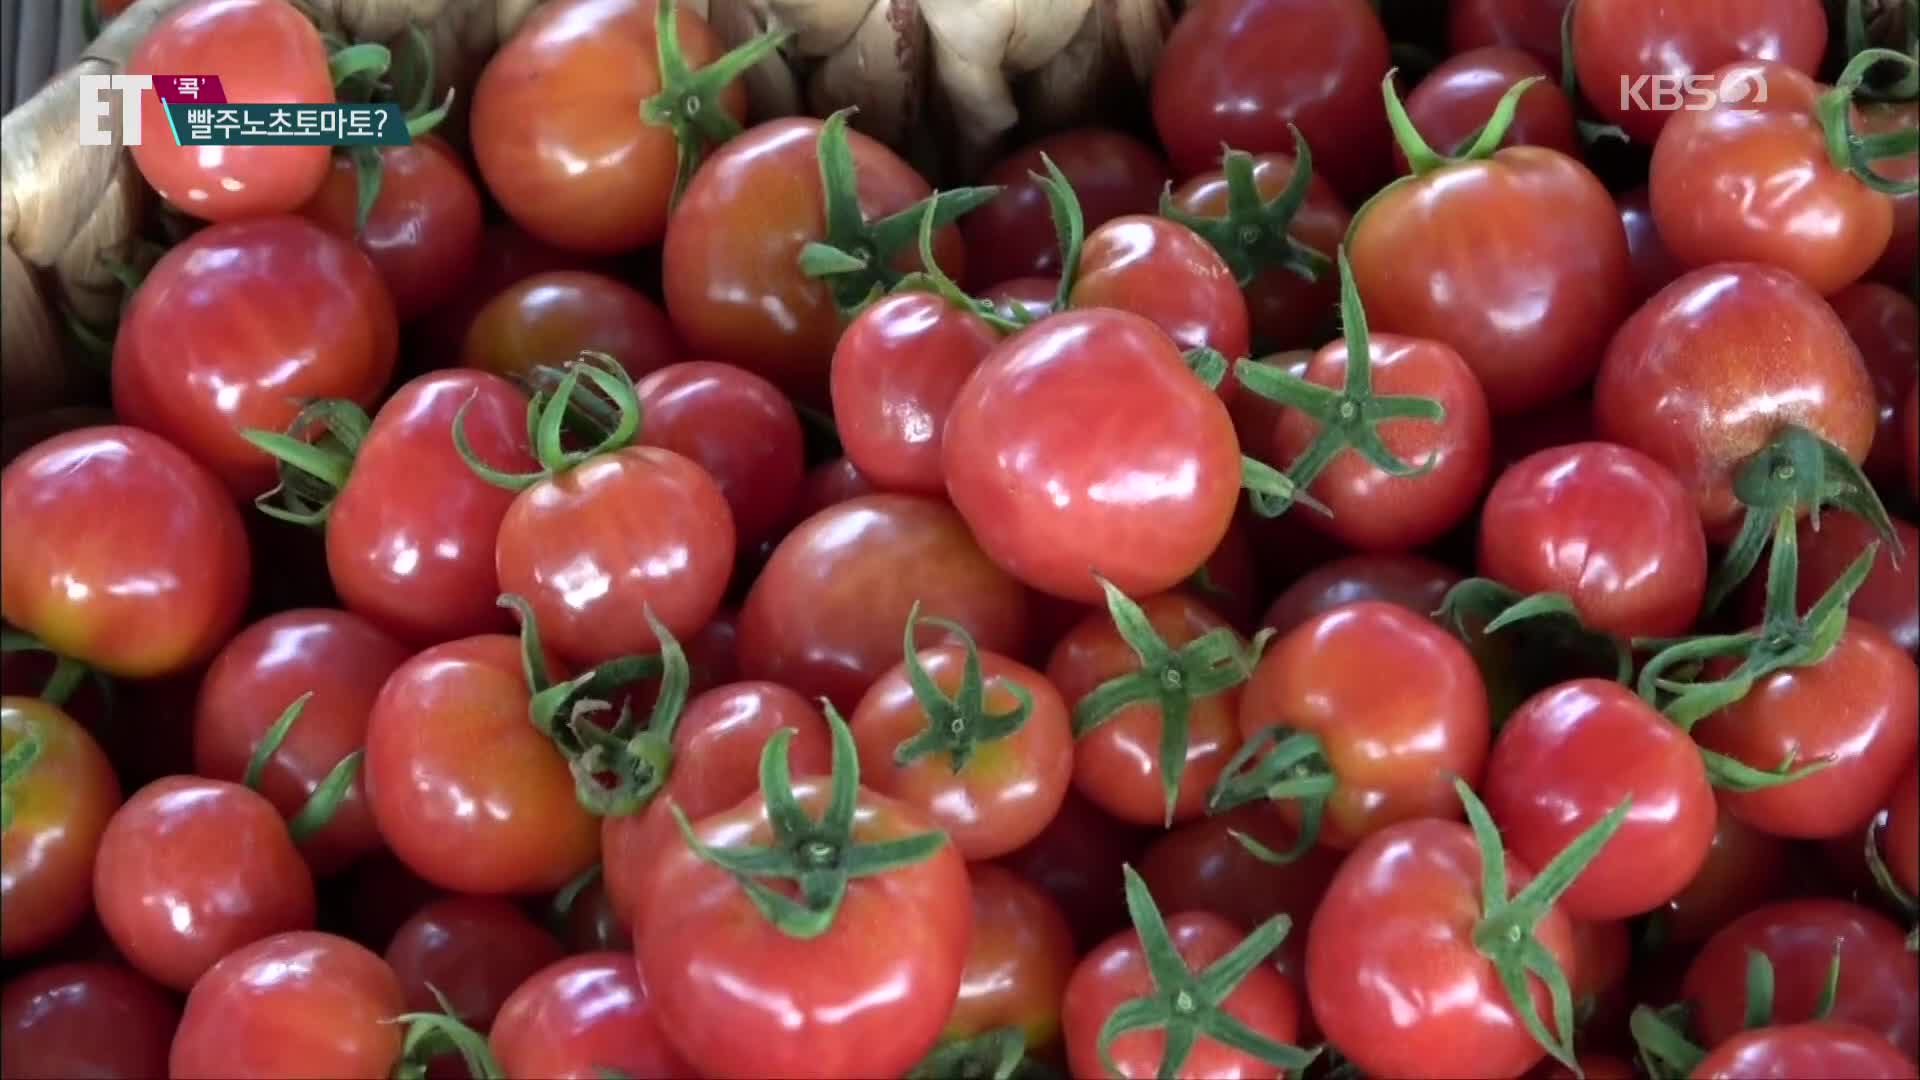 [ET] ‘단짠단짠’ 대저토마토의 계절…빨주노초토마토?